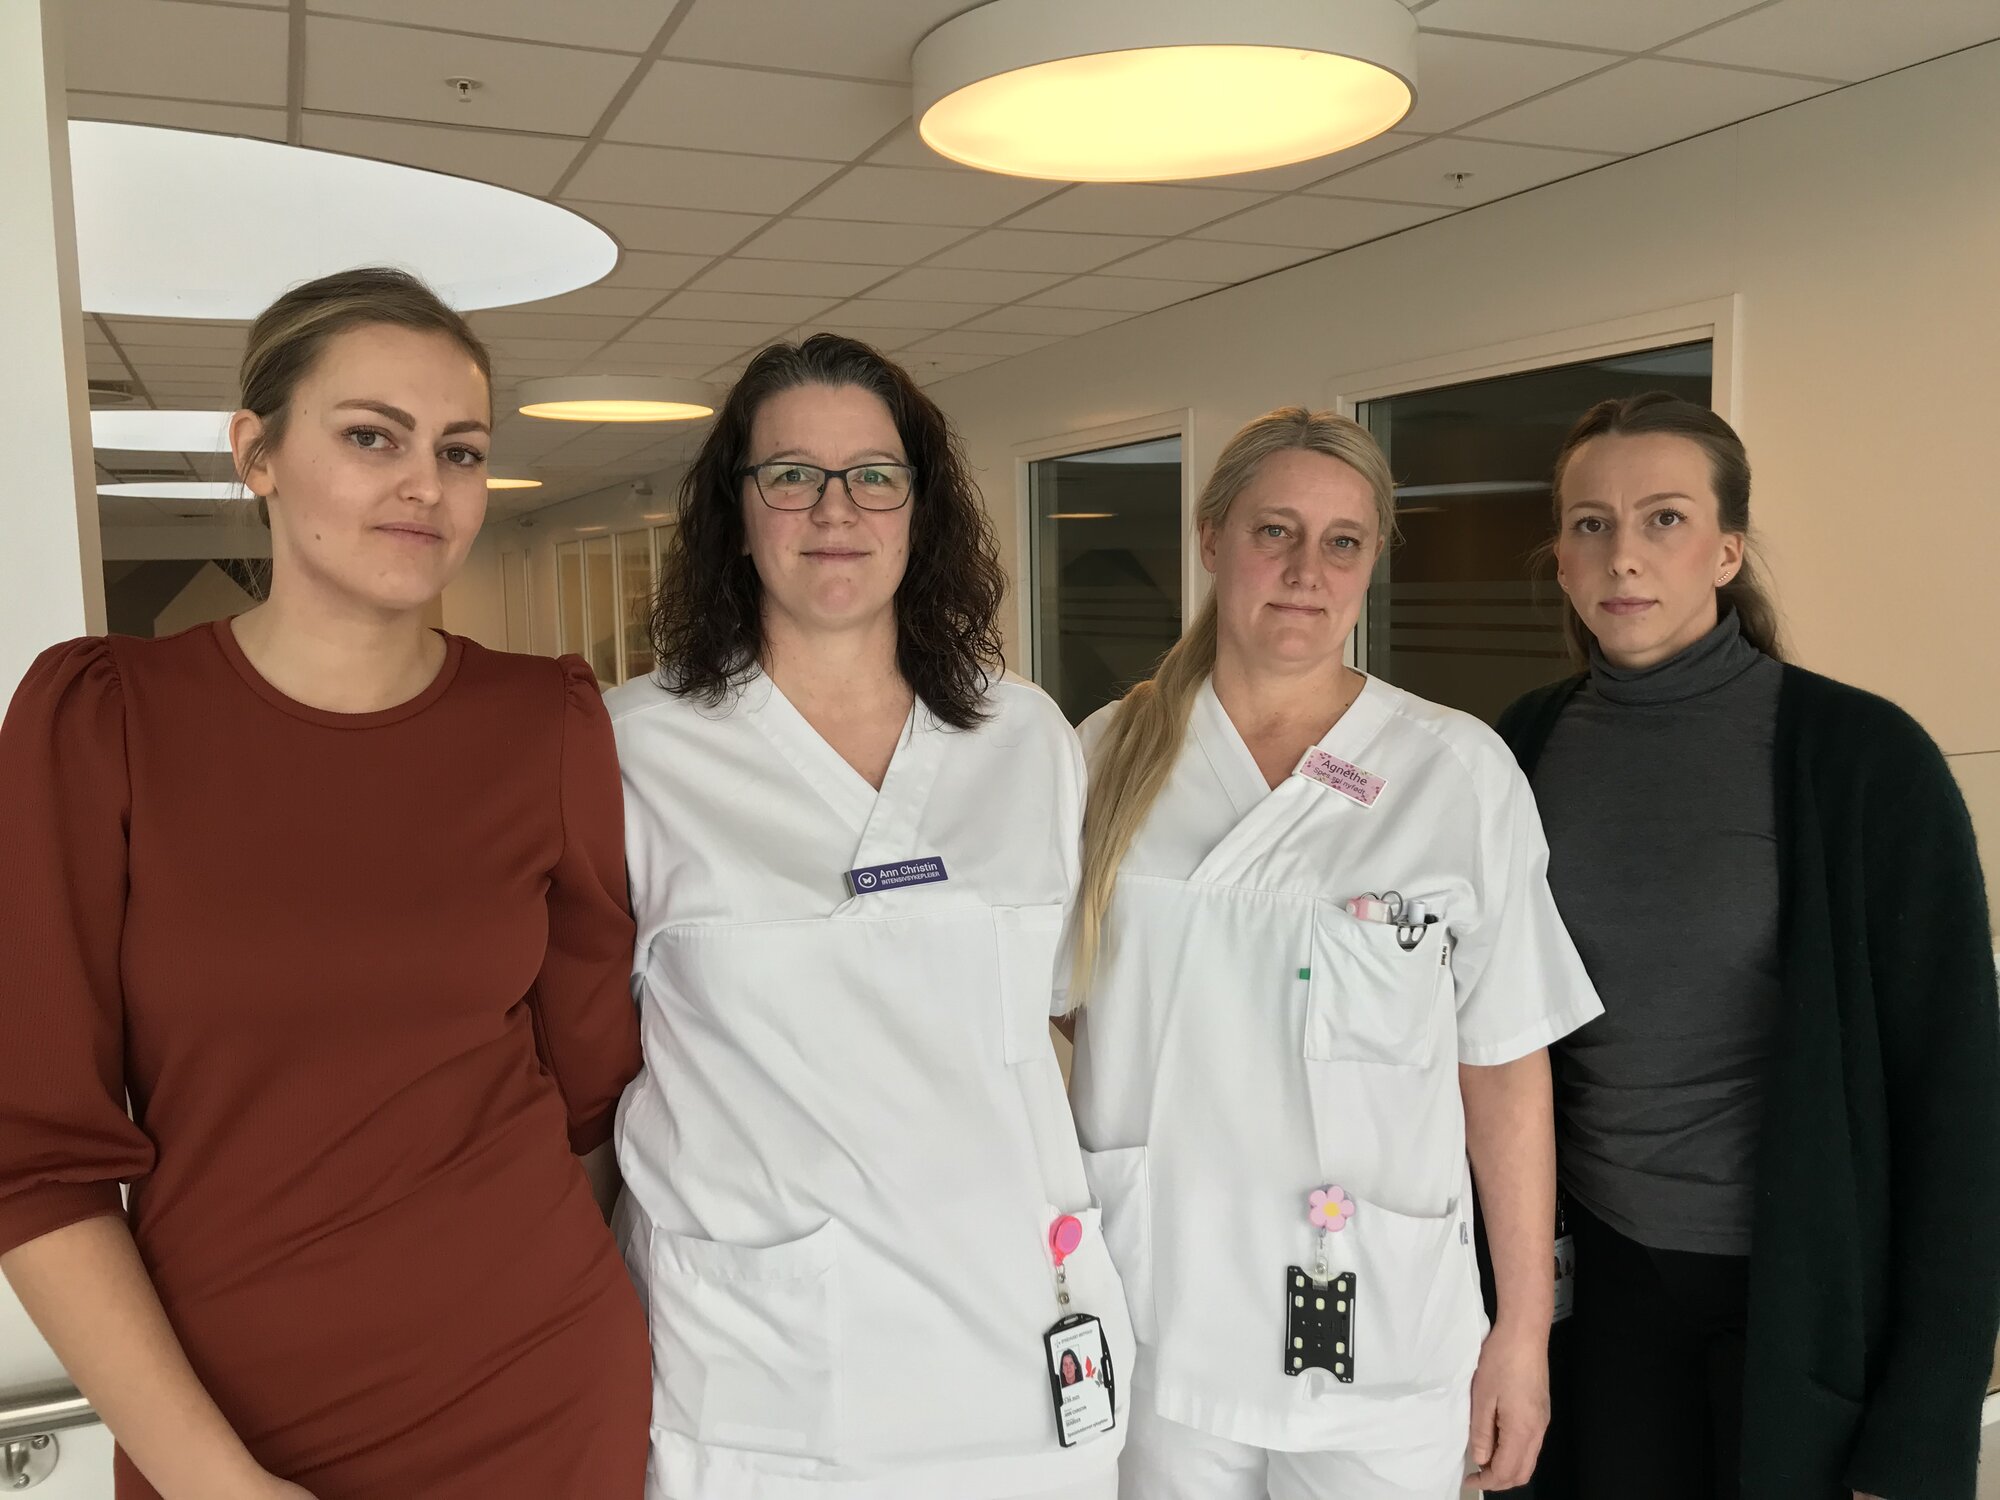 Fire sykepleiere som er saksøkt av sin arbeidsgiver Sykehuset Østfold